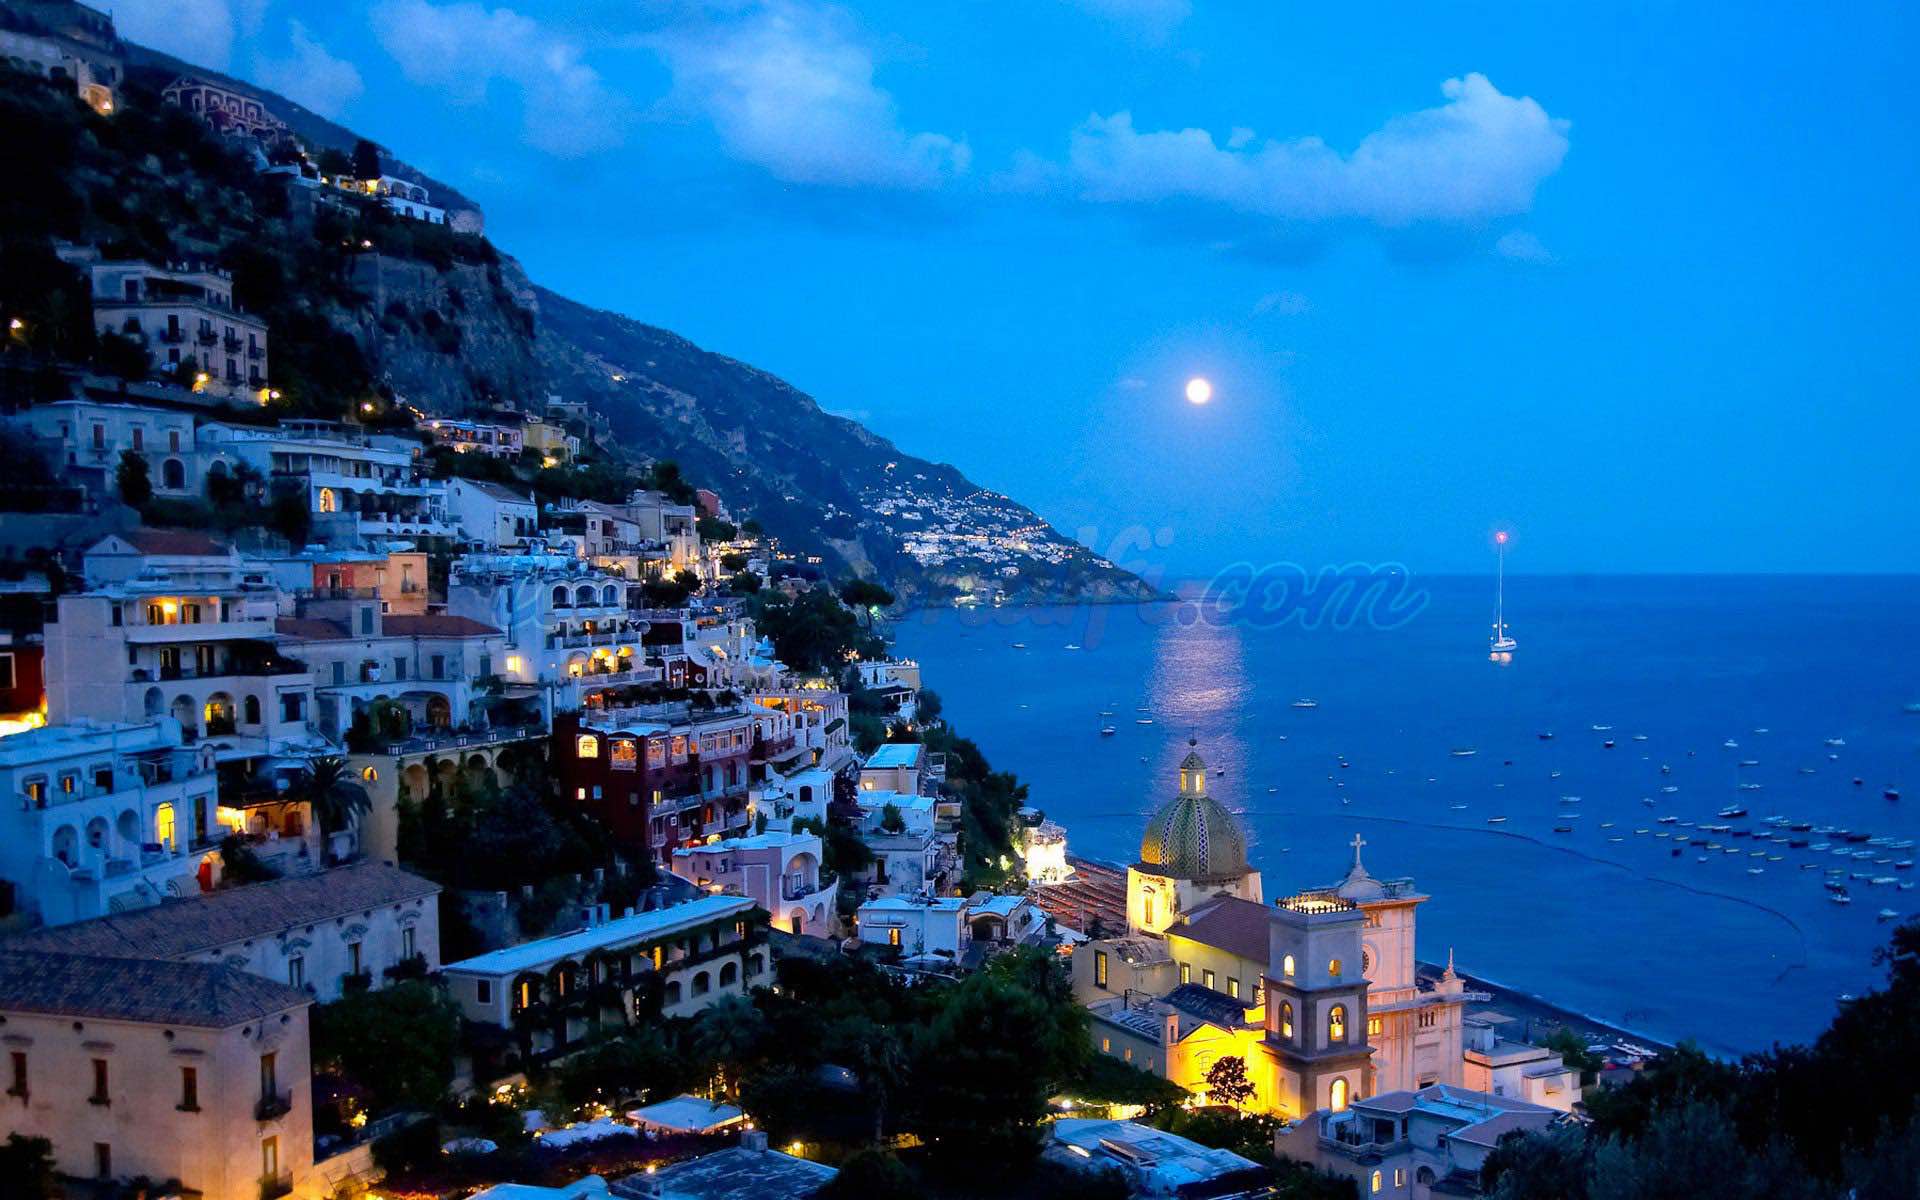 Living Amalfi, Positano